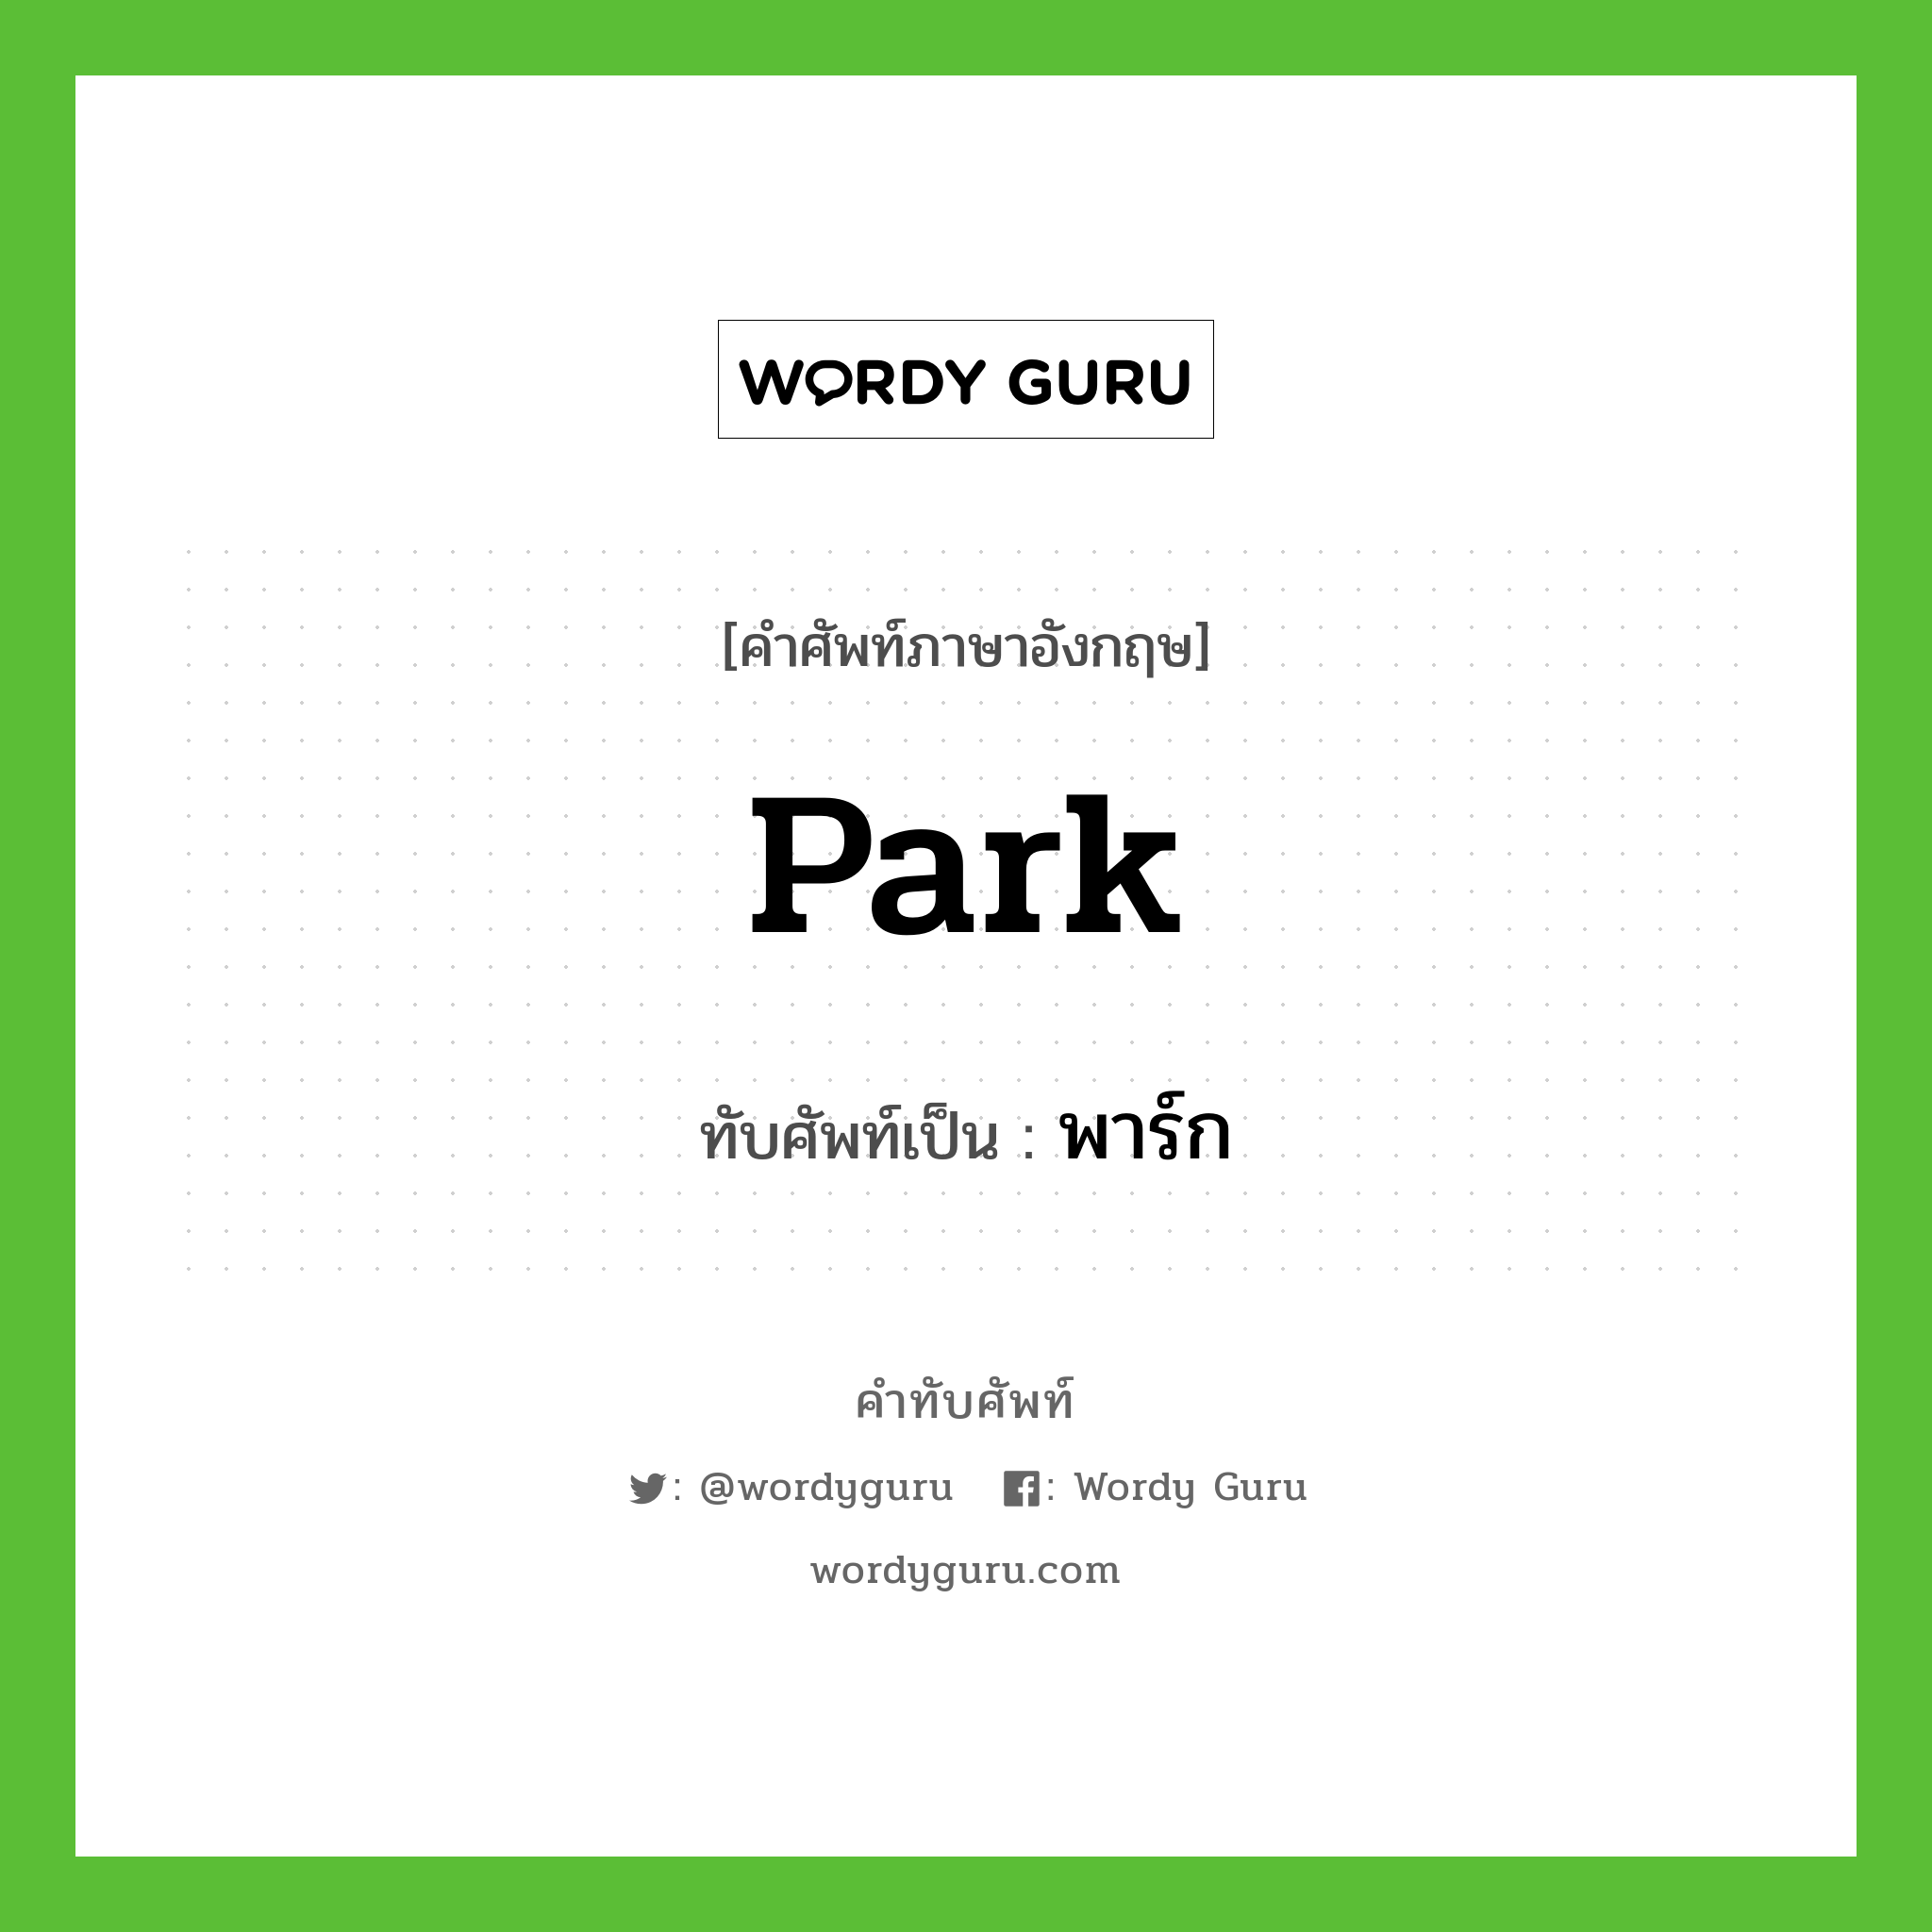 park เขียนเป็นคำไทยว่าอะไร?, คำศัพท์ภาษาอังกฤษ park ทับศัพท์เป็น พาร์ก